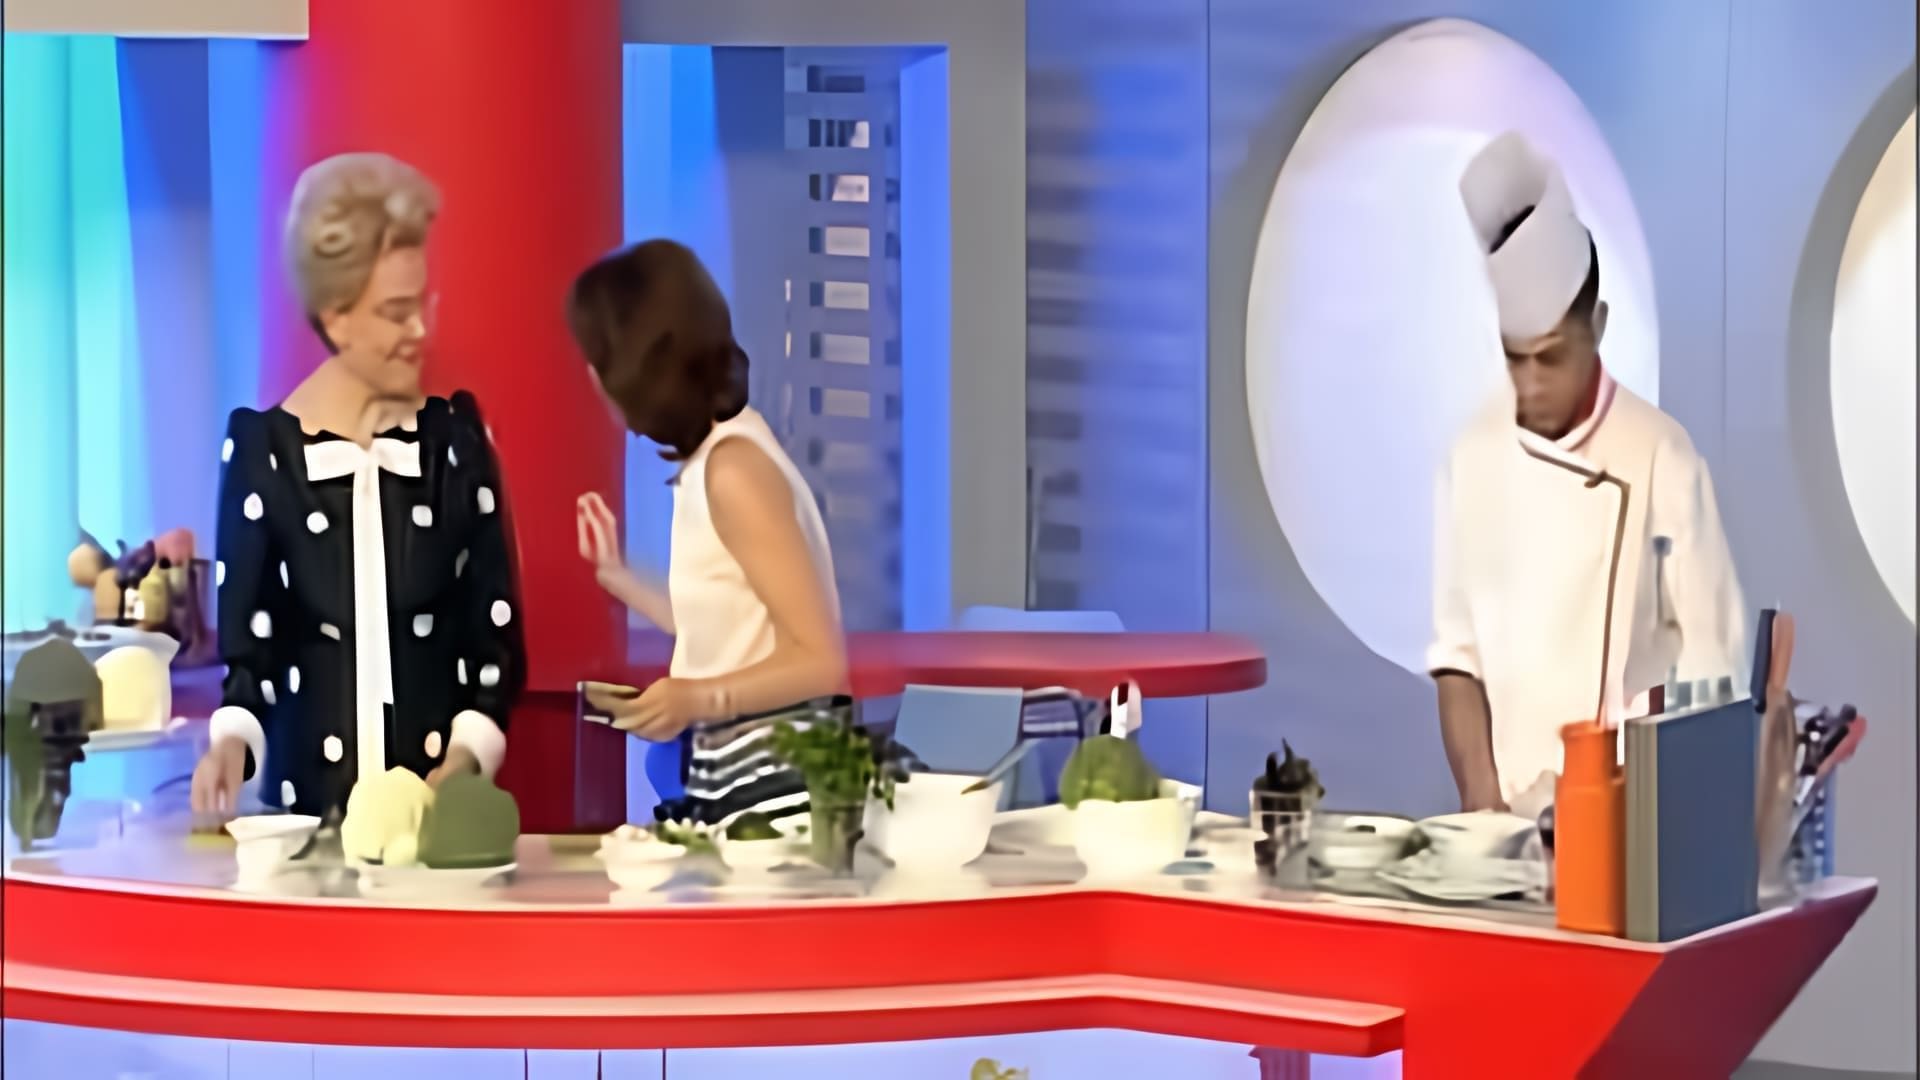 В этом видео мы видим, как ведущая Светлана Зейналова готовит белковый омлет с овощами